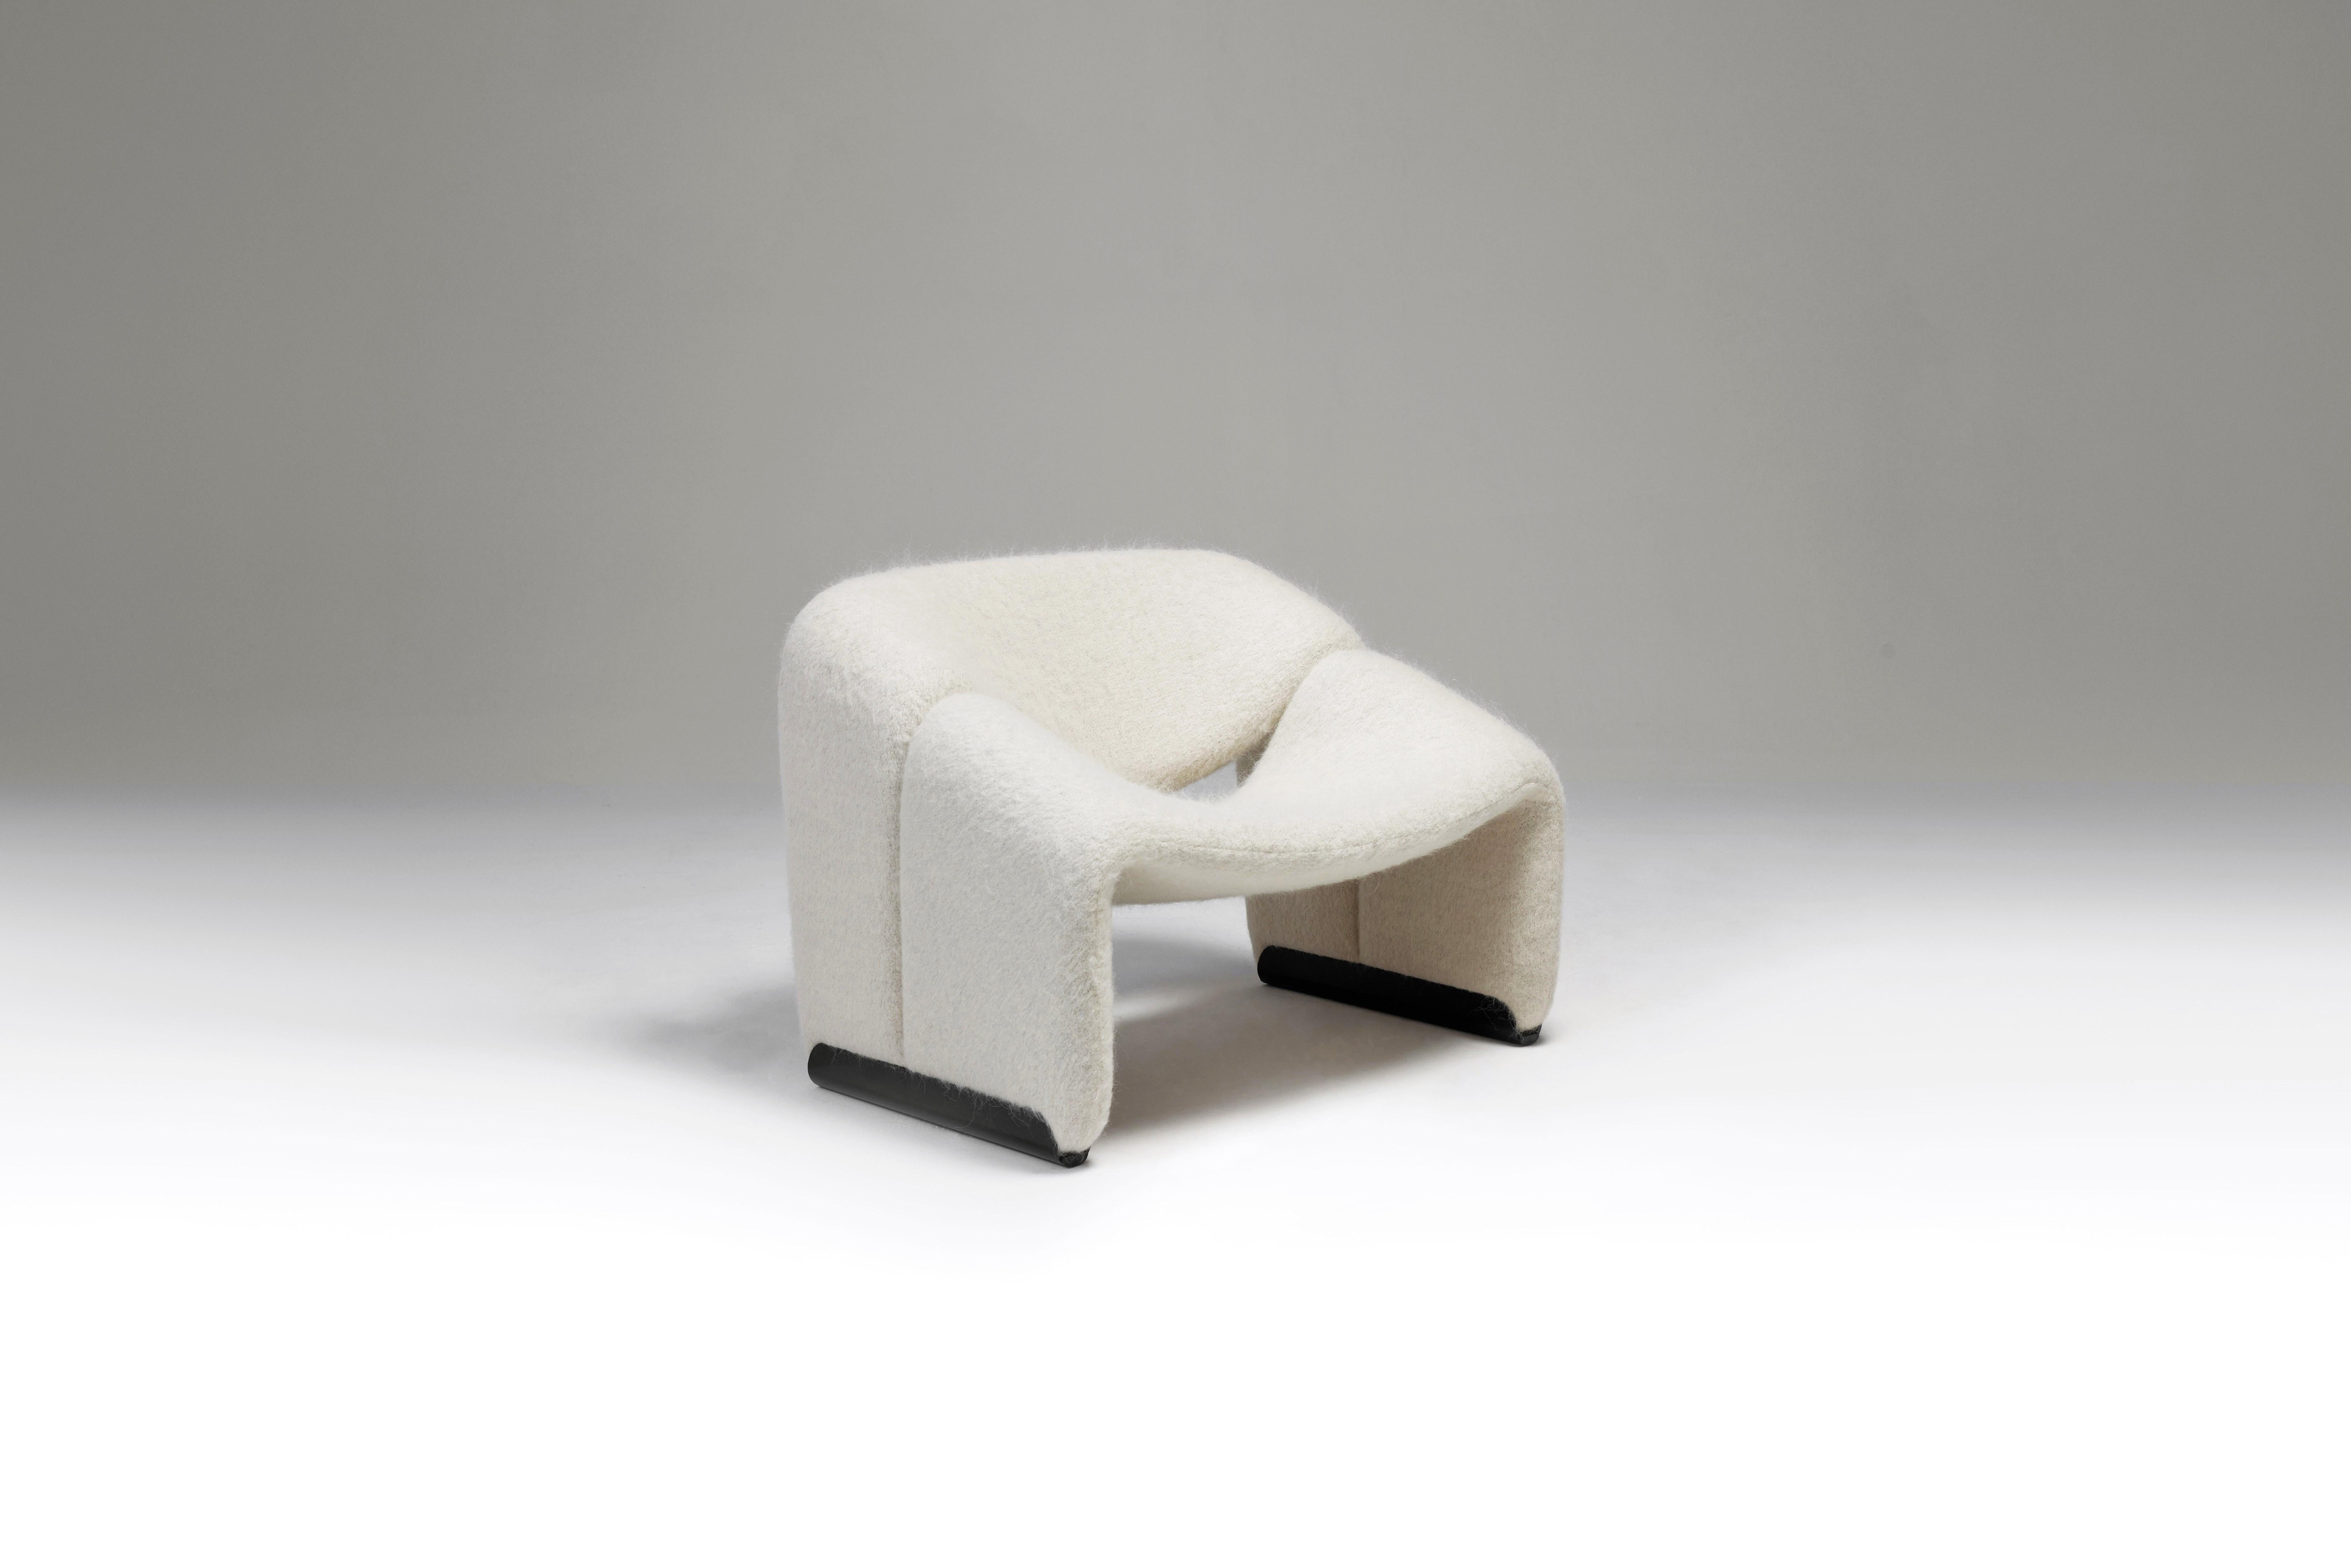 Fantastischer Sessel F598, auch Groovy genannt, von Pierre Paulin für Artifort, Niederlande 1972. Dieser skulpturale Sessel wurde vor kurzem mit einem schönen und hochwertigen Pierre Frey Woll- und Alpakamischgewebe aus Paris, Frankreich, neu